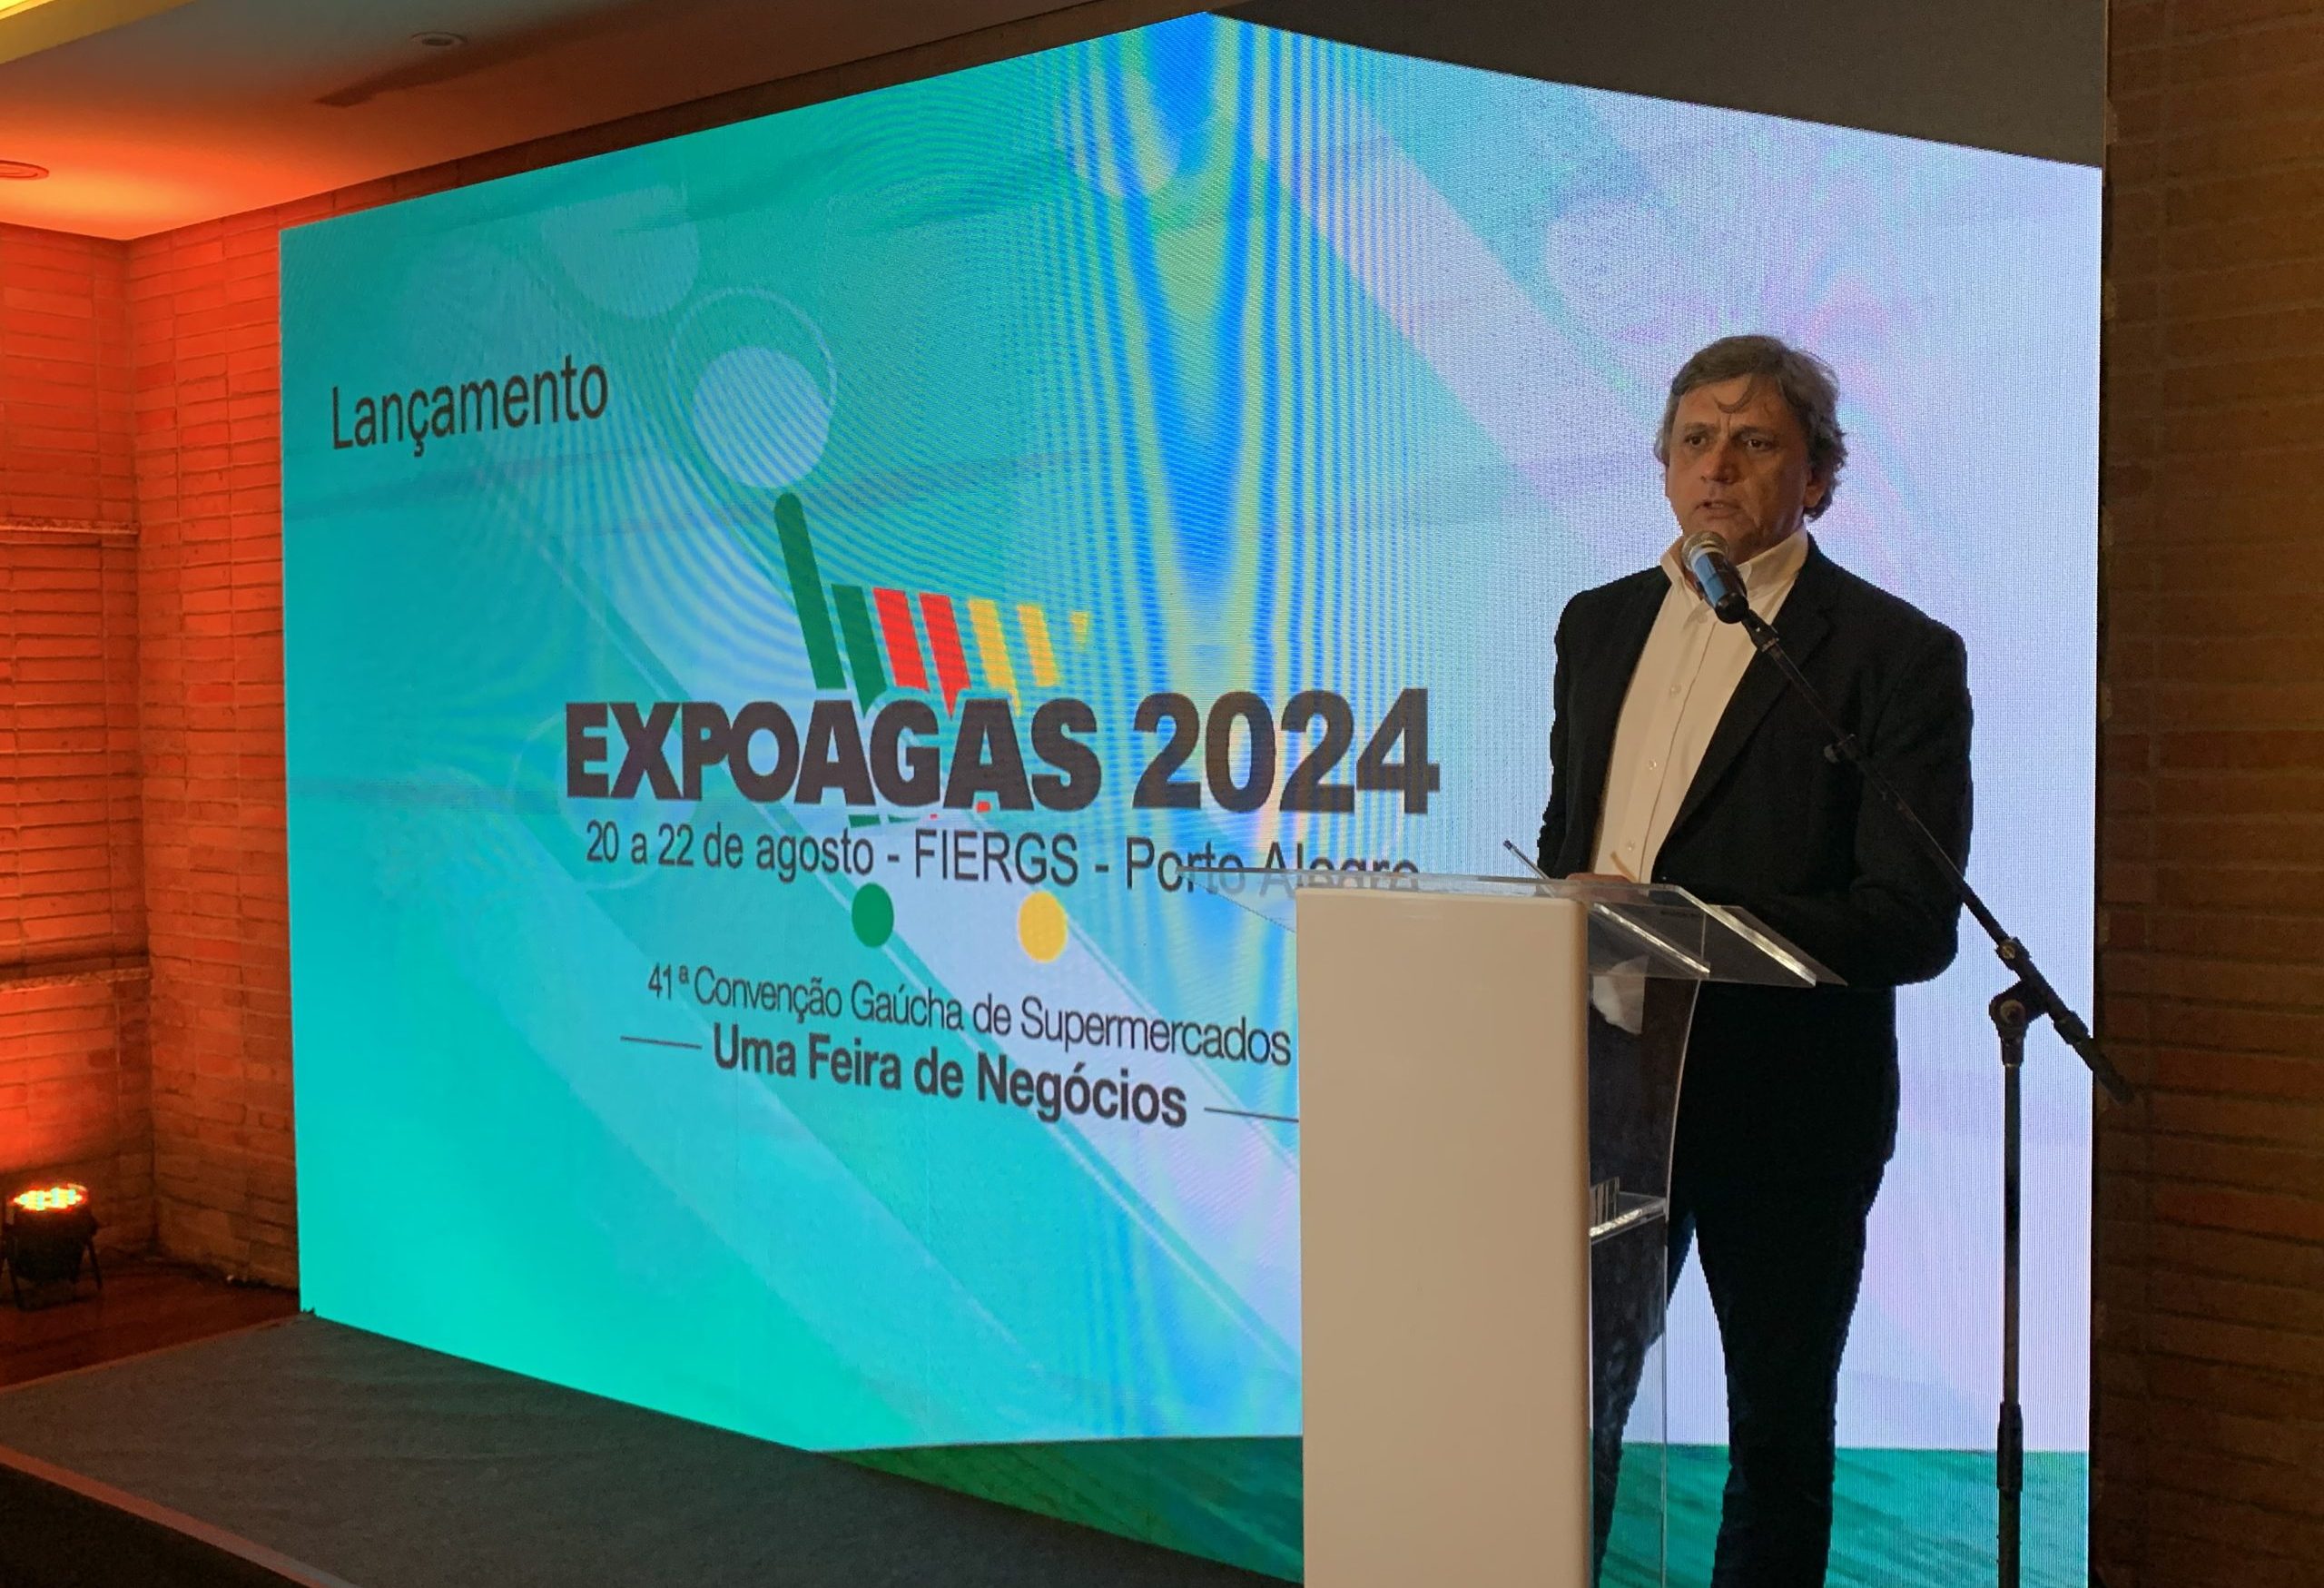 Agas lança Expoagas 2024 e anuncia espaço de inovação para 40 startups voltadas ao setor 